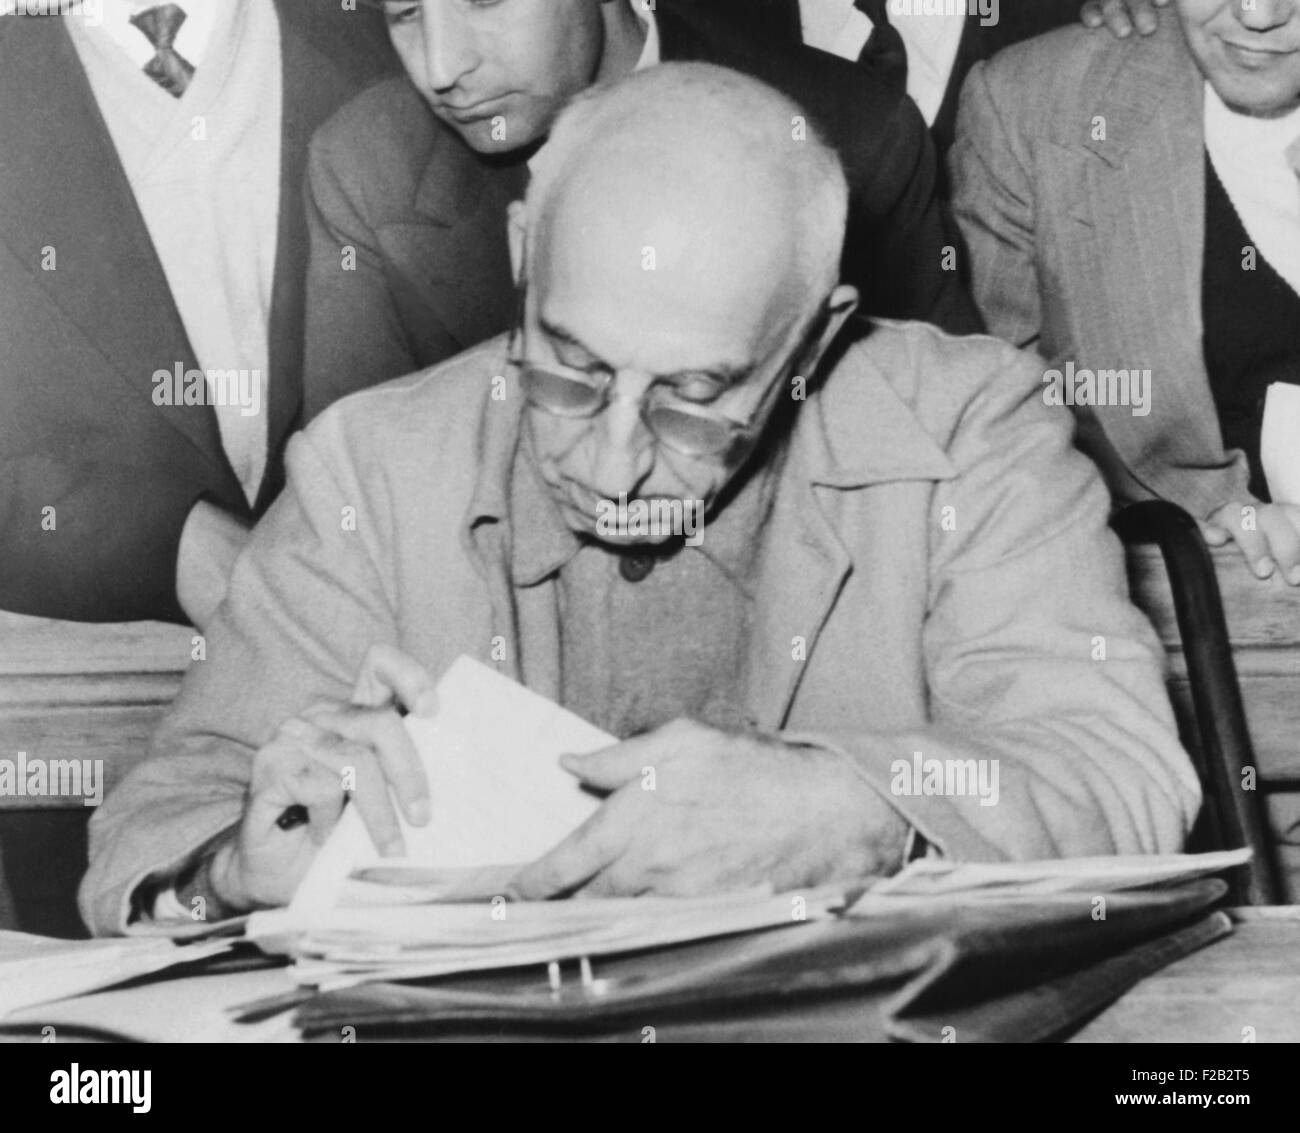 Gestürzten iranischen Premier Mohammed Mossadegh liest während seines Teheran Verrats Testversion. 19. Dezember 1953. Mossadegh wurde mit trotzt des Schahs, versucht, den Sturz der Monarchie und illegal auflösen Parlament beauftragt. (CSU 2015 8 512) Stockfoto